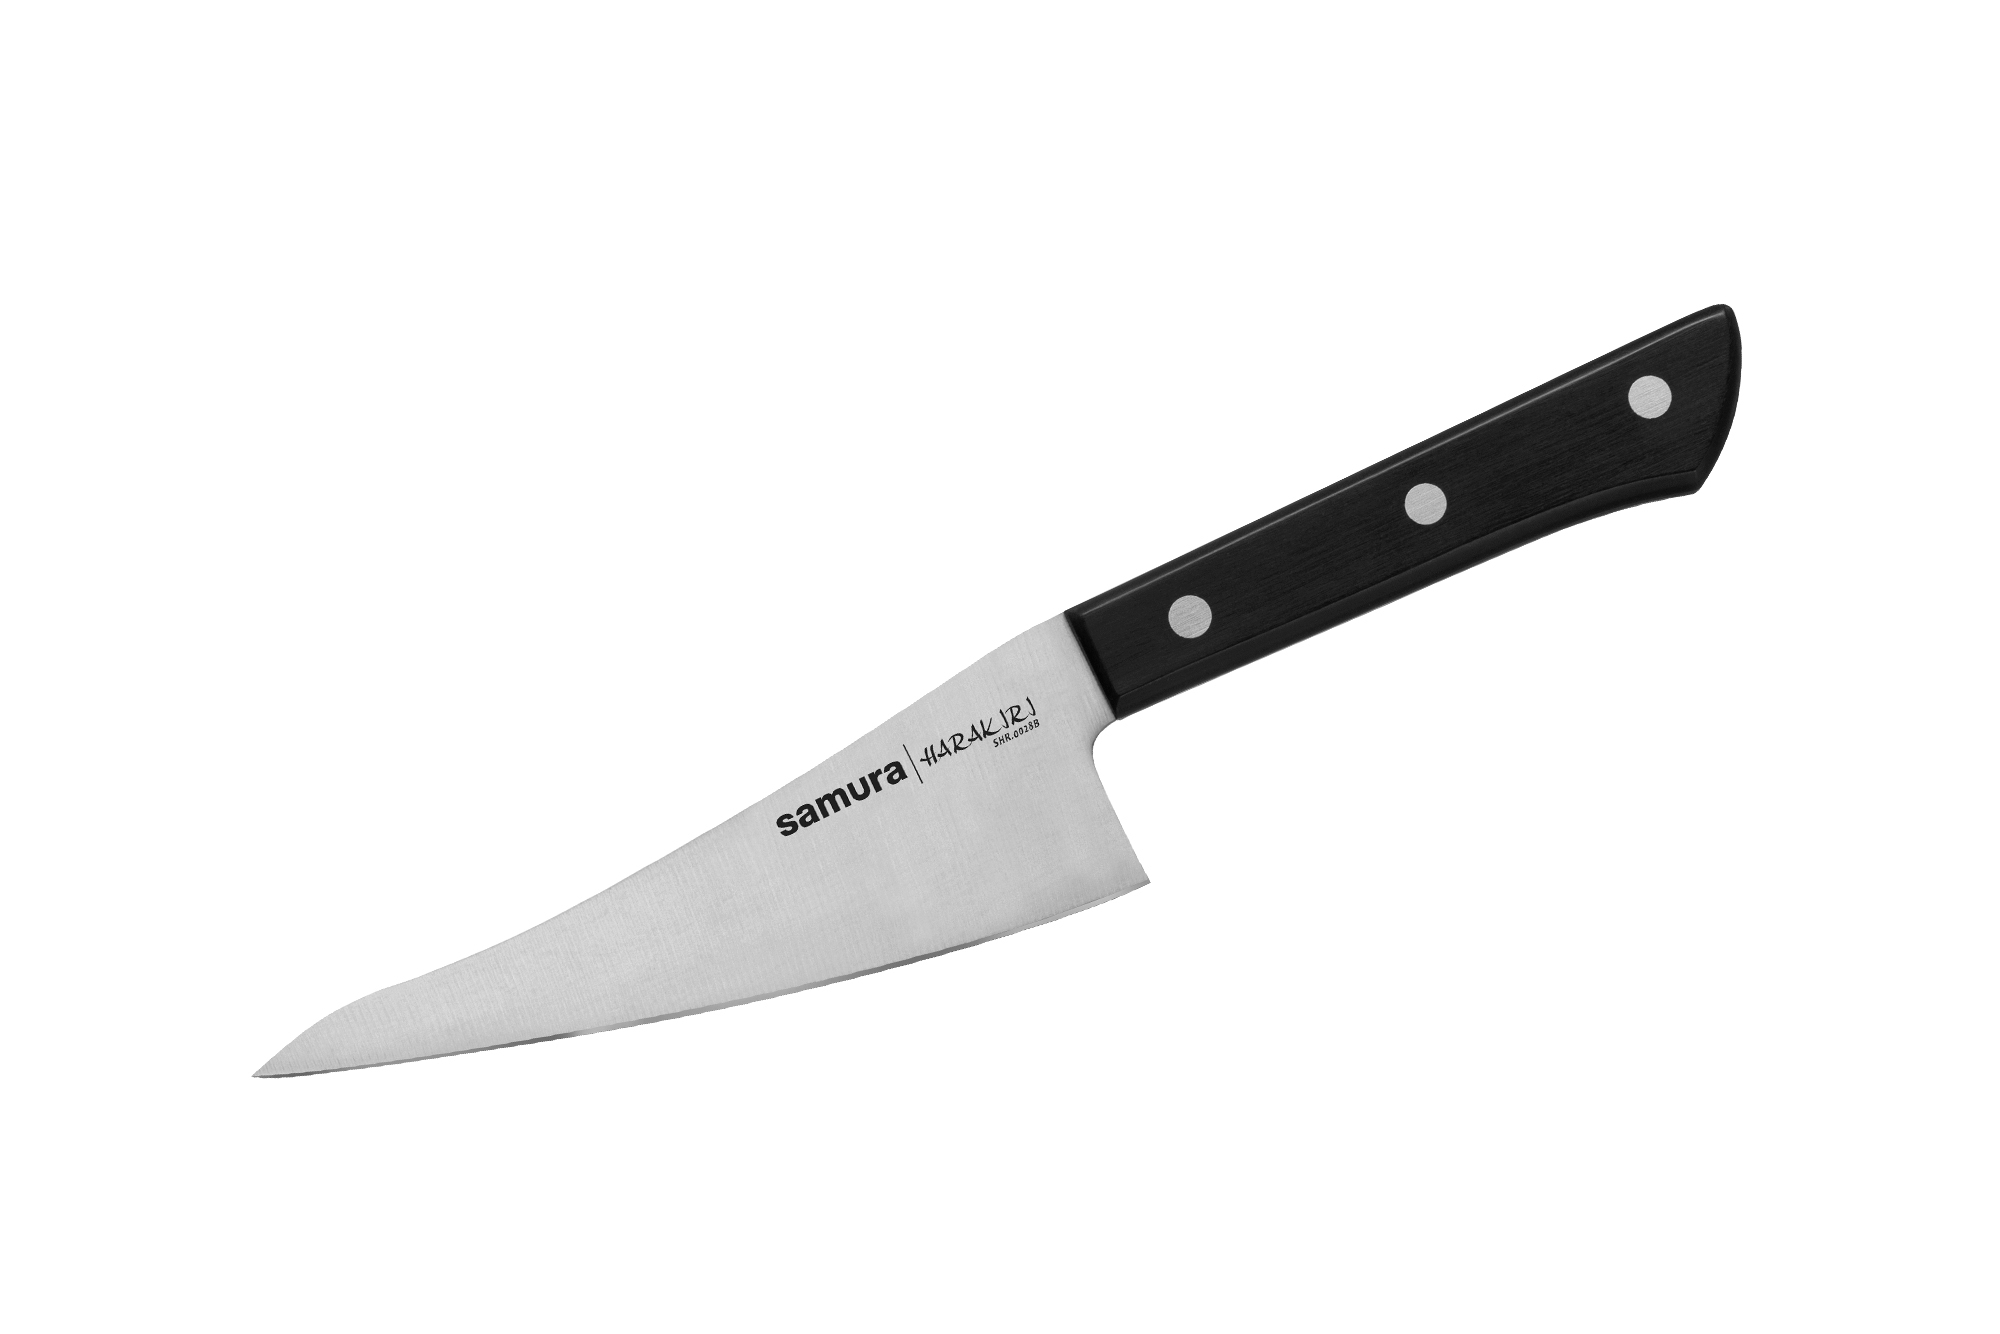 Кухонный нож универсальный Samura Harakiri 146 мм, сталь AUS-8, рукоять пластик, черный нож кухонный samura harakiri гранд шеф 240 мм коррозие стойкая сталь abs пластик